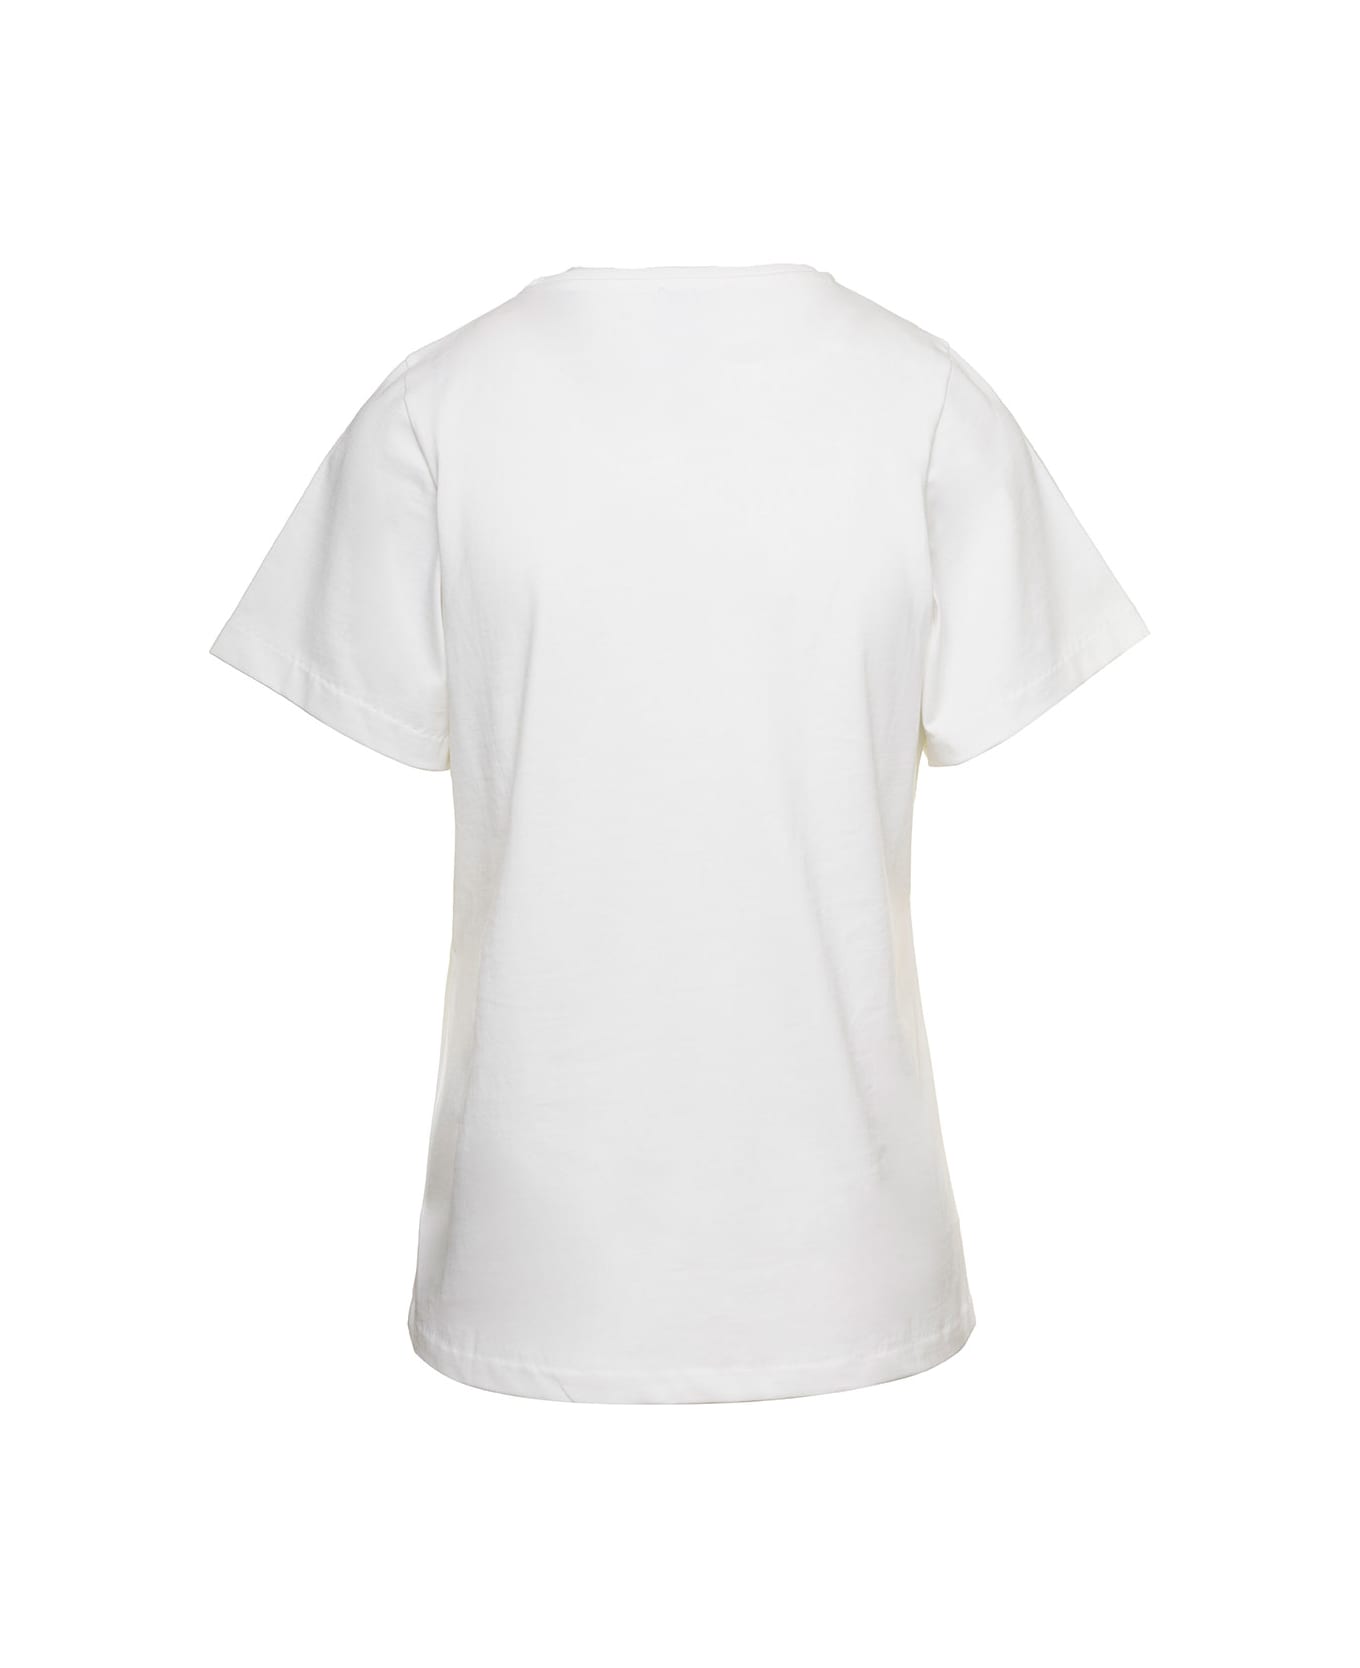 Totême Crewneck T-shirt In White Cotton Woman - White